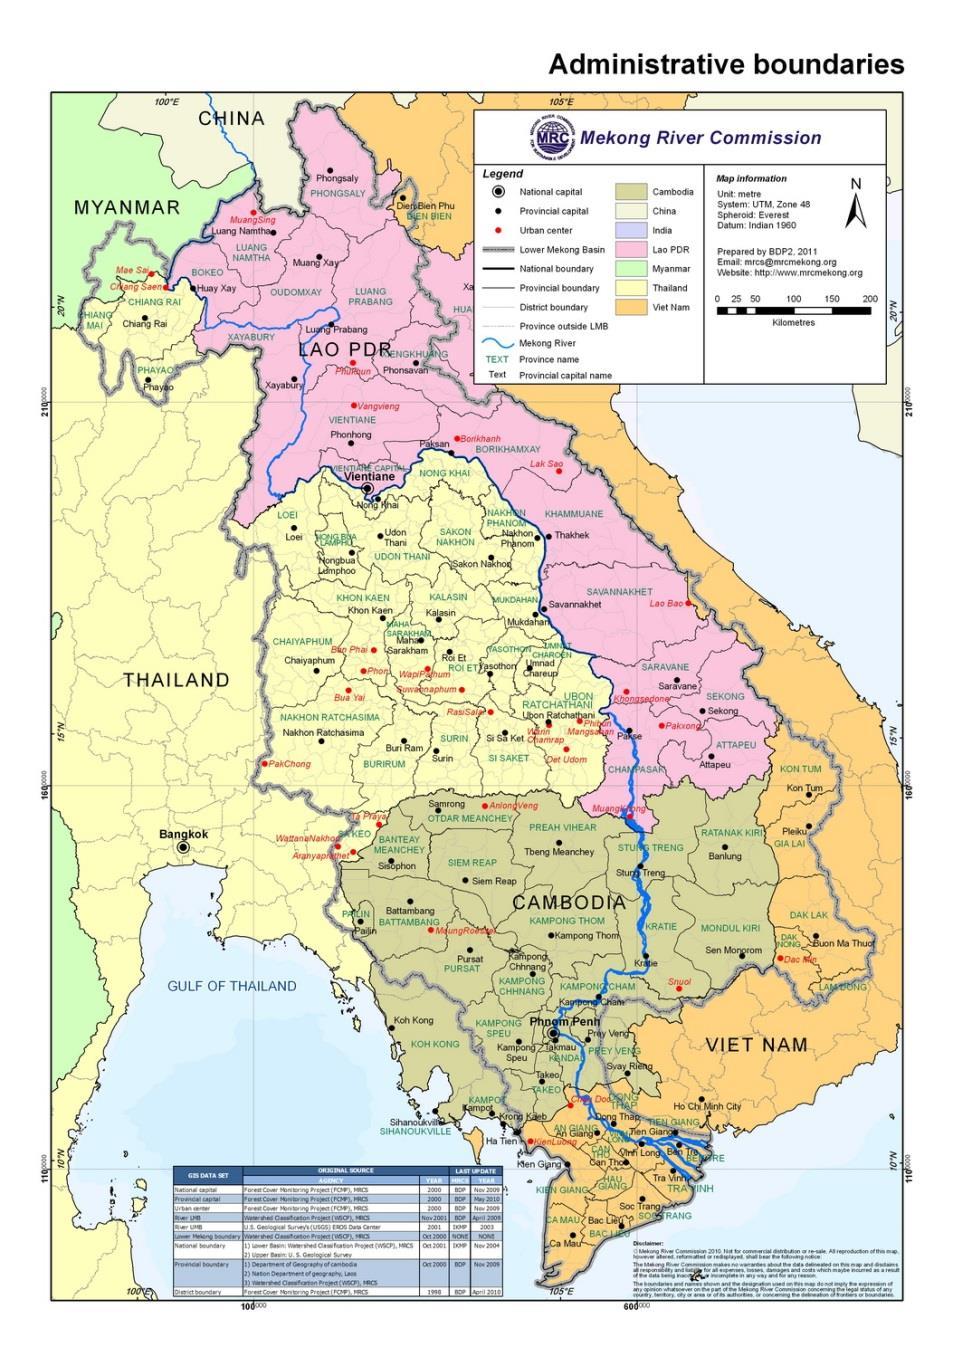 Lower Mekong Basin 795000 km 2 475,000 million m 3 4800km 8